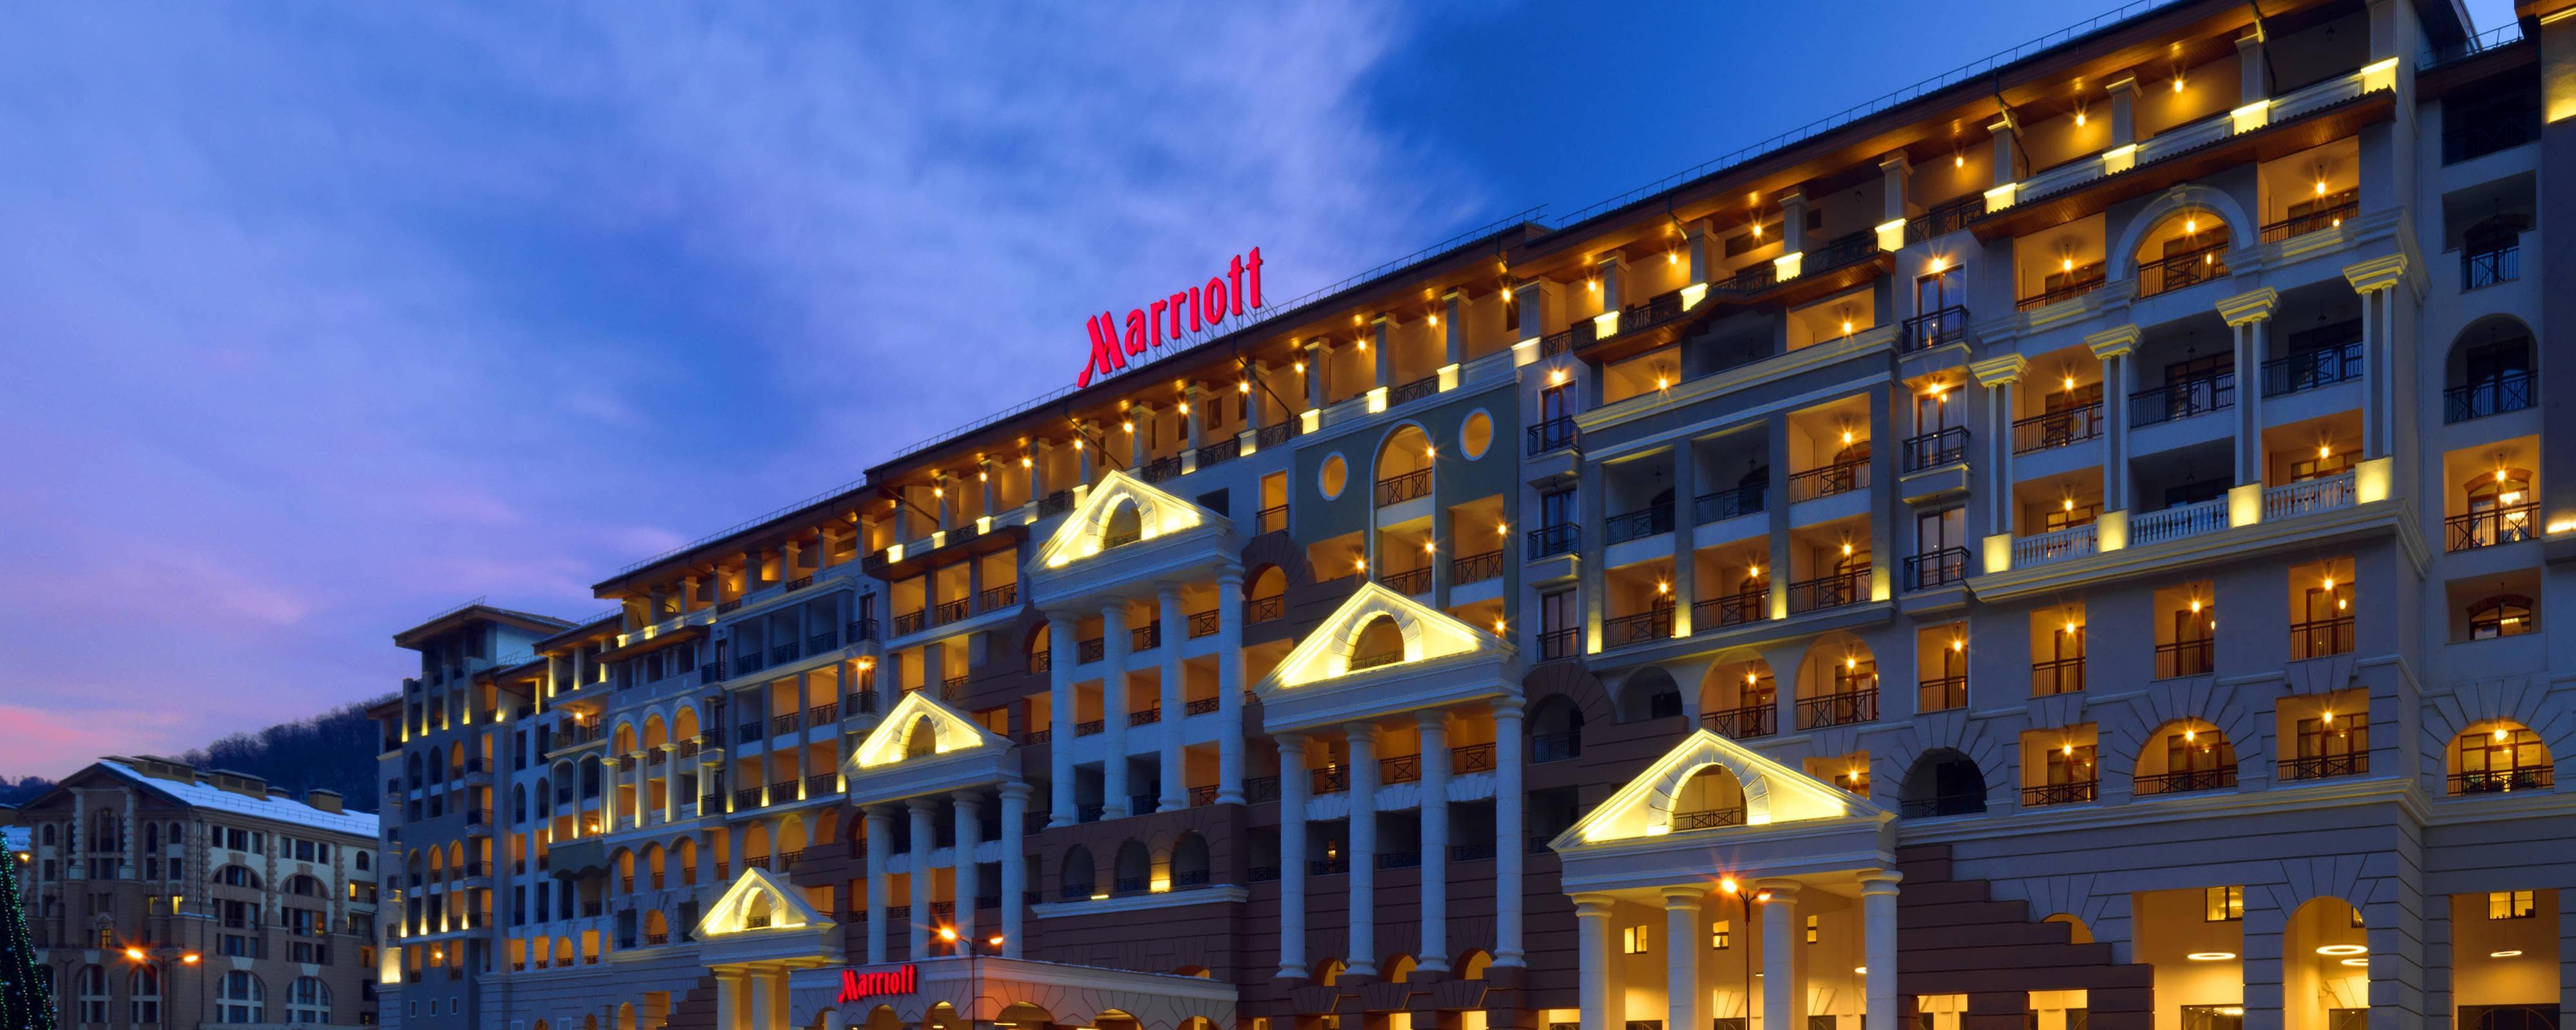 Hotel in Sochi, Russia - Sochi Resort | Sochi Marriott ...